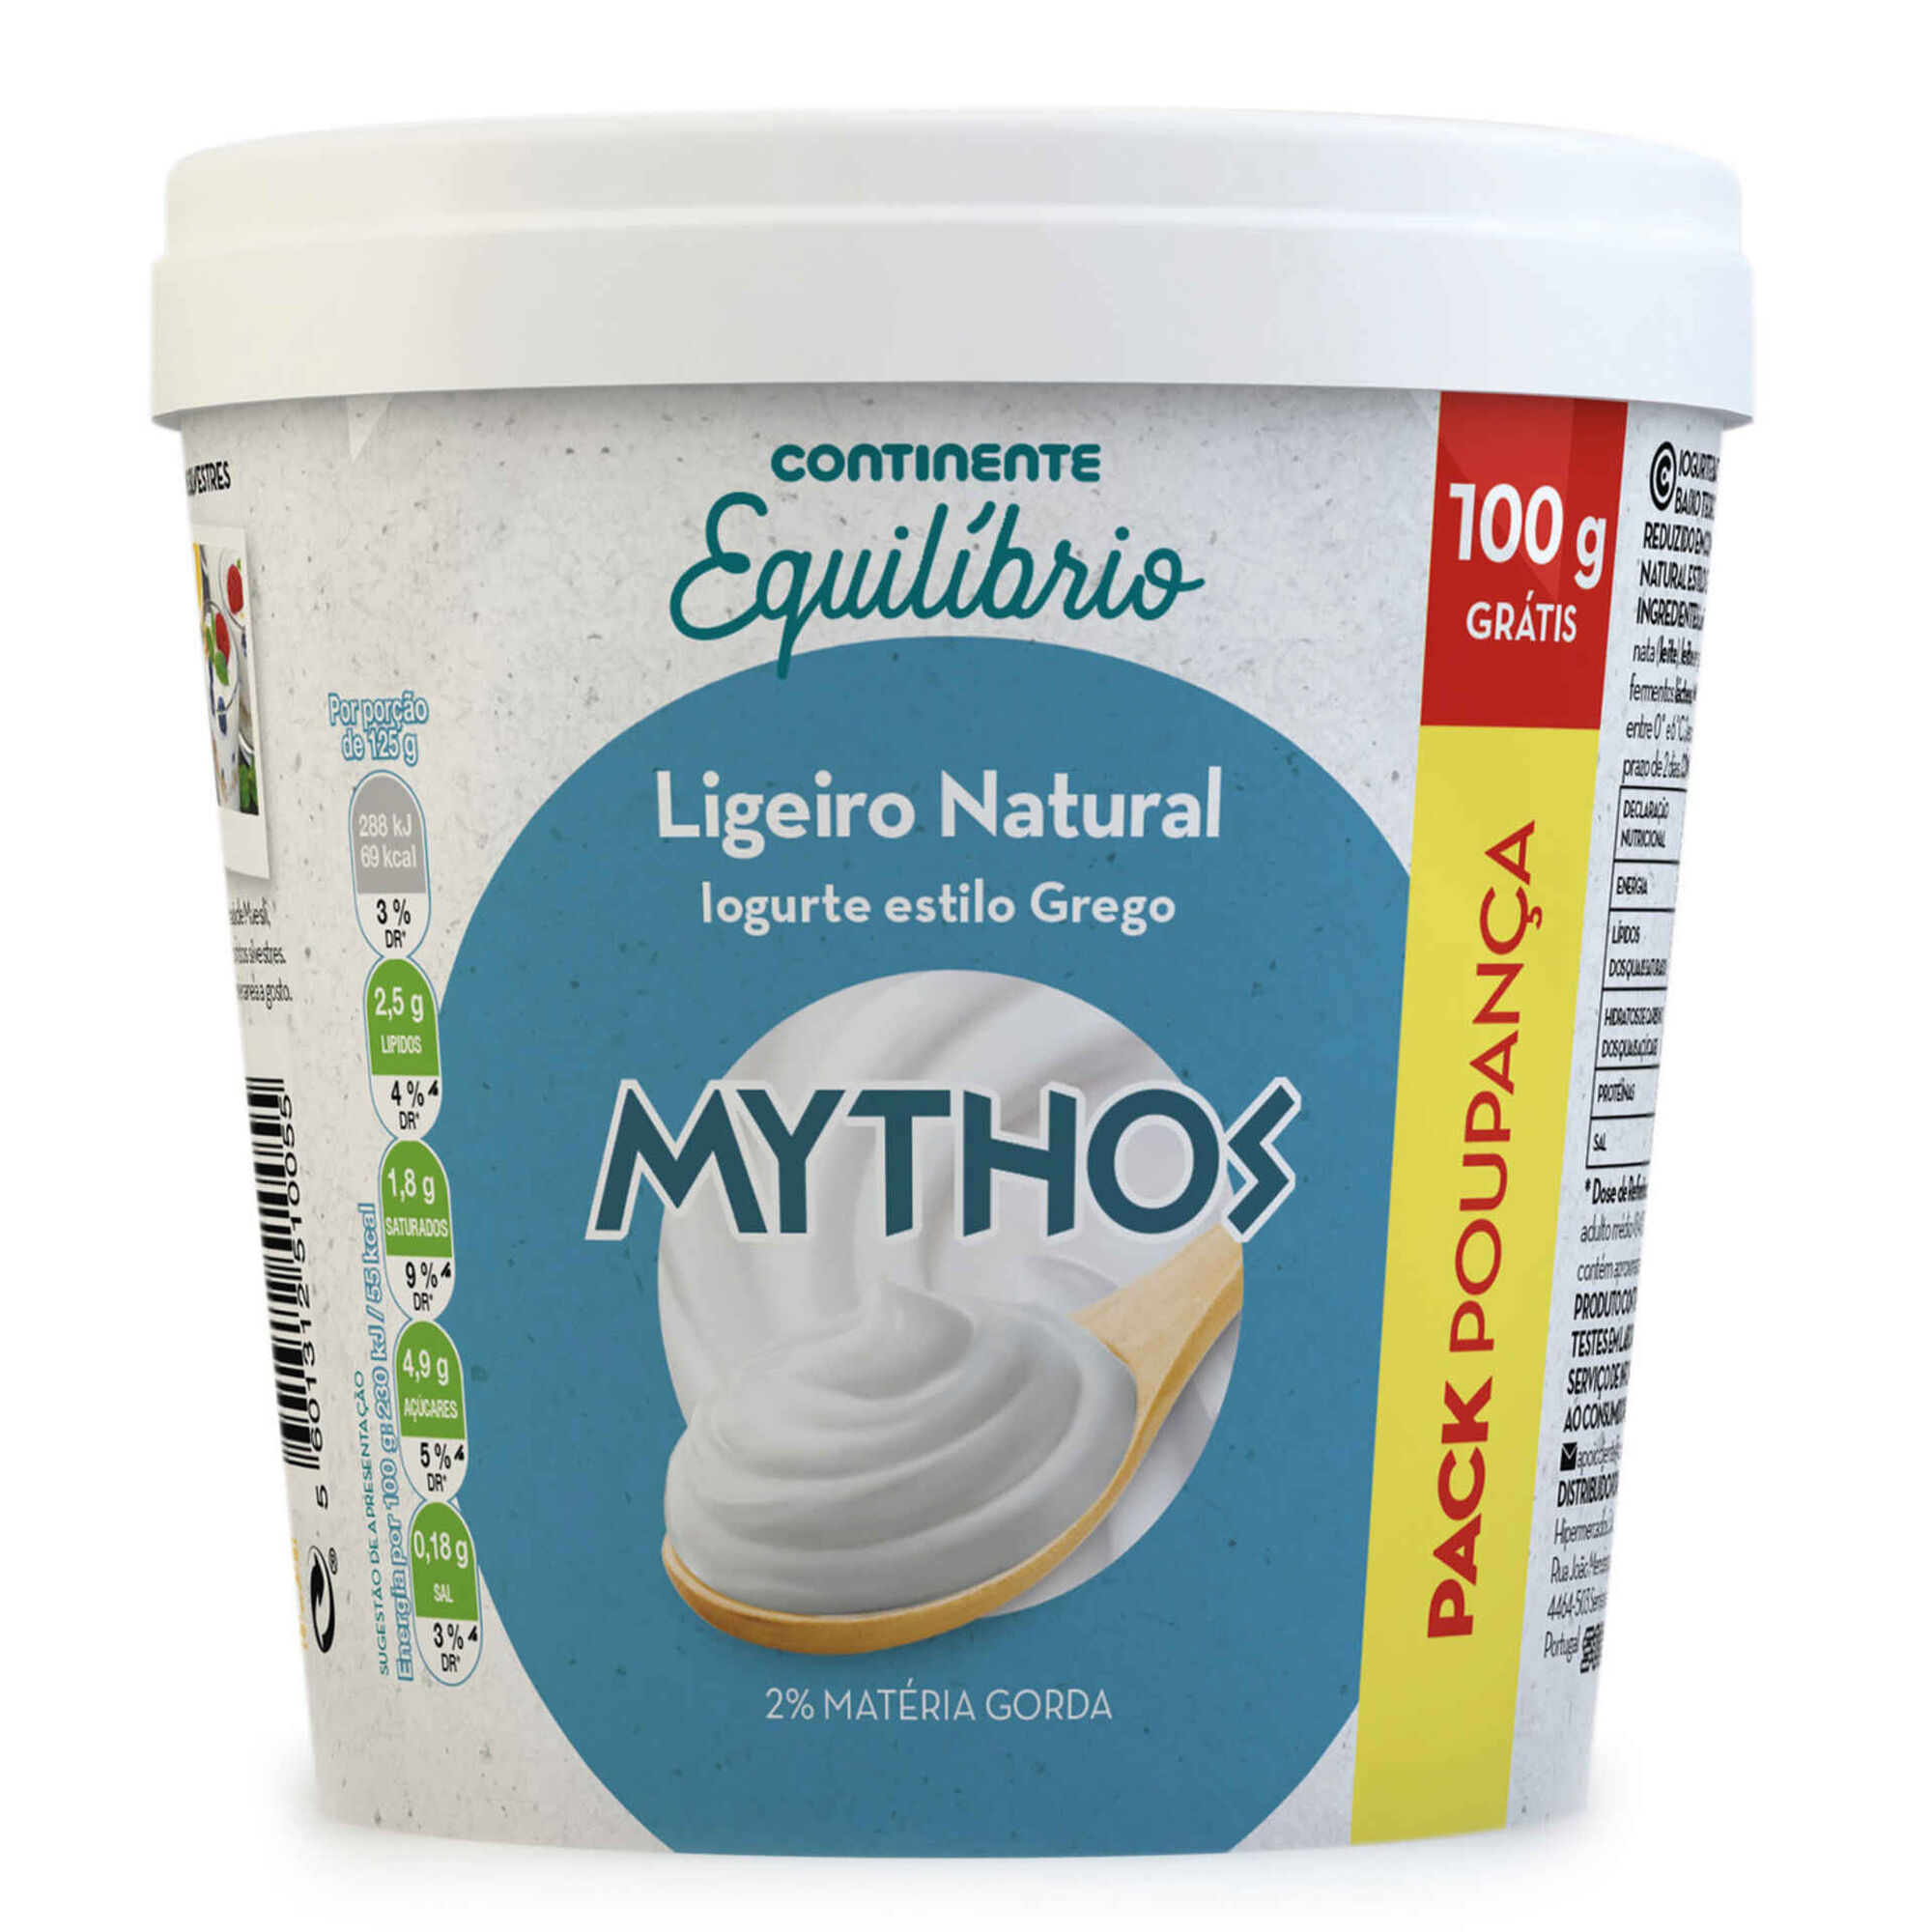 Iogurte Grego Mythos Ligeiro Natural Pack Poupança